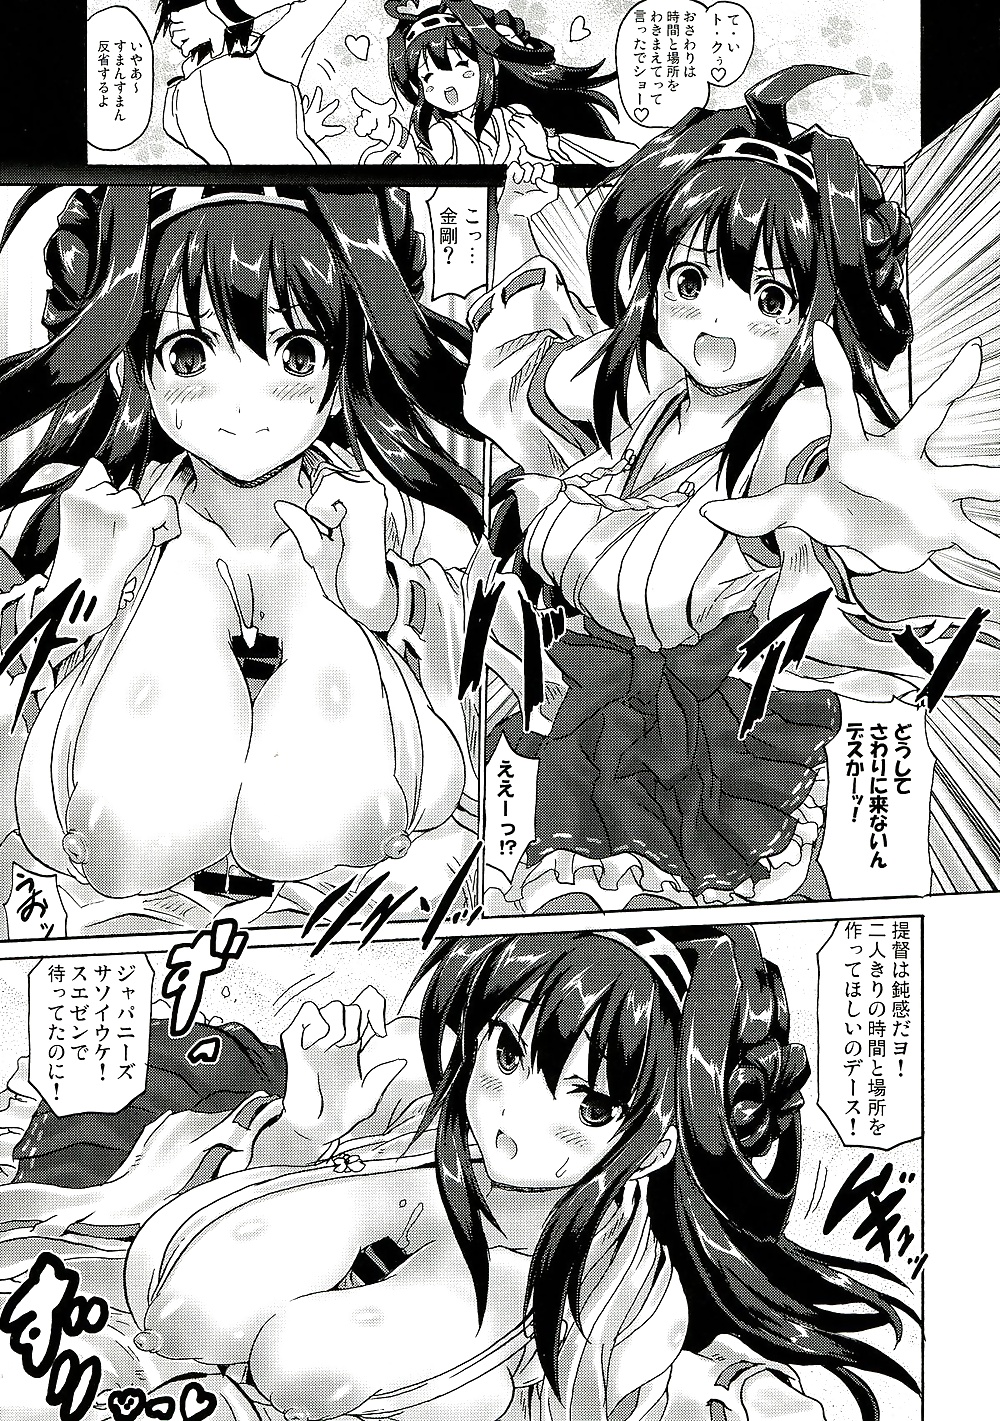 Best of Paizuri(Manga Edition) #30779444